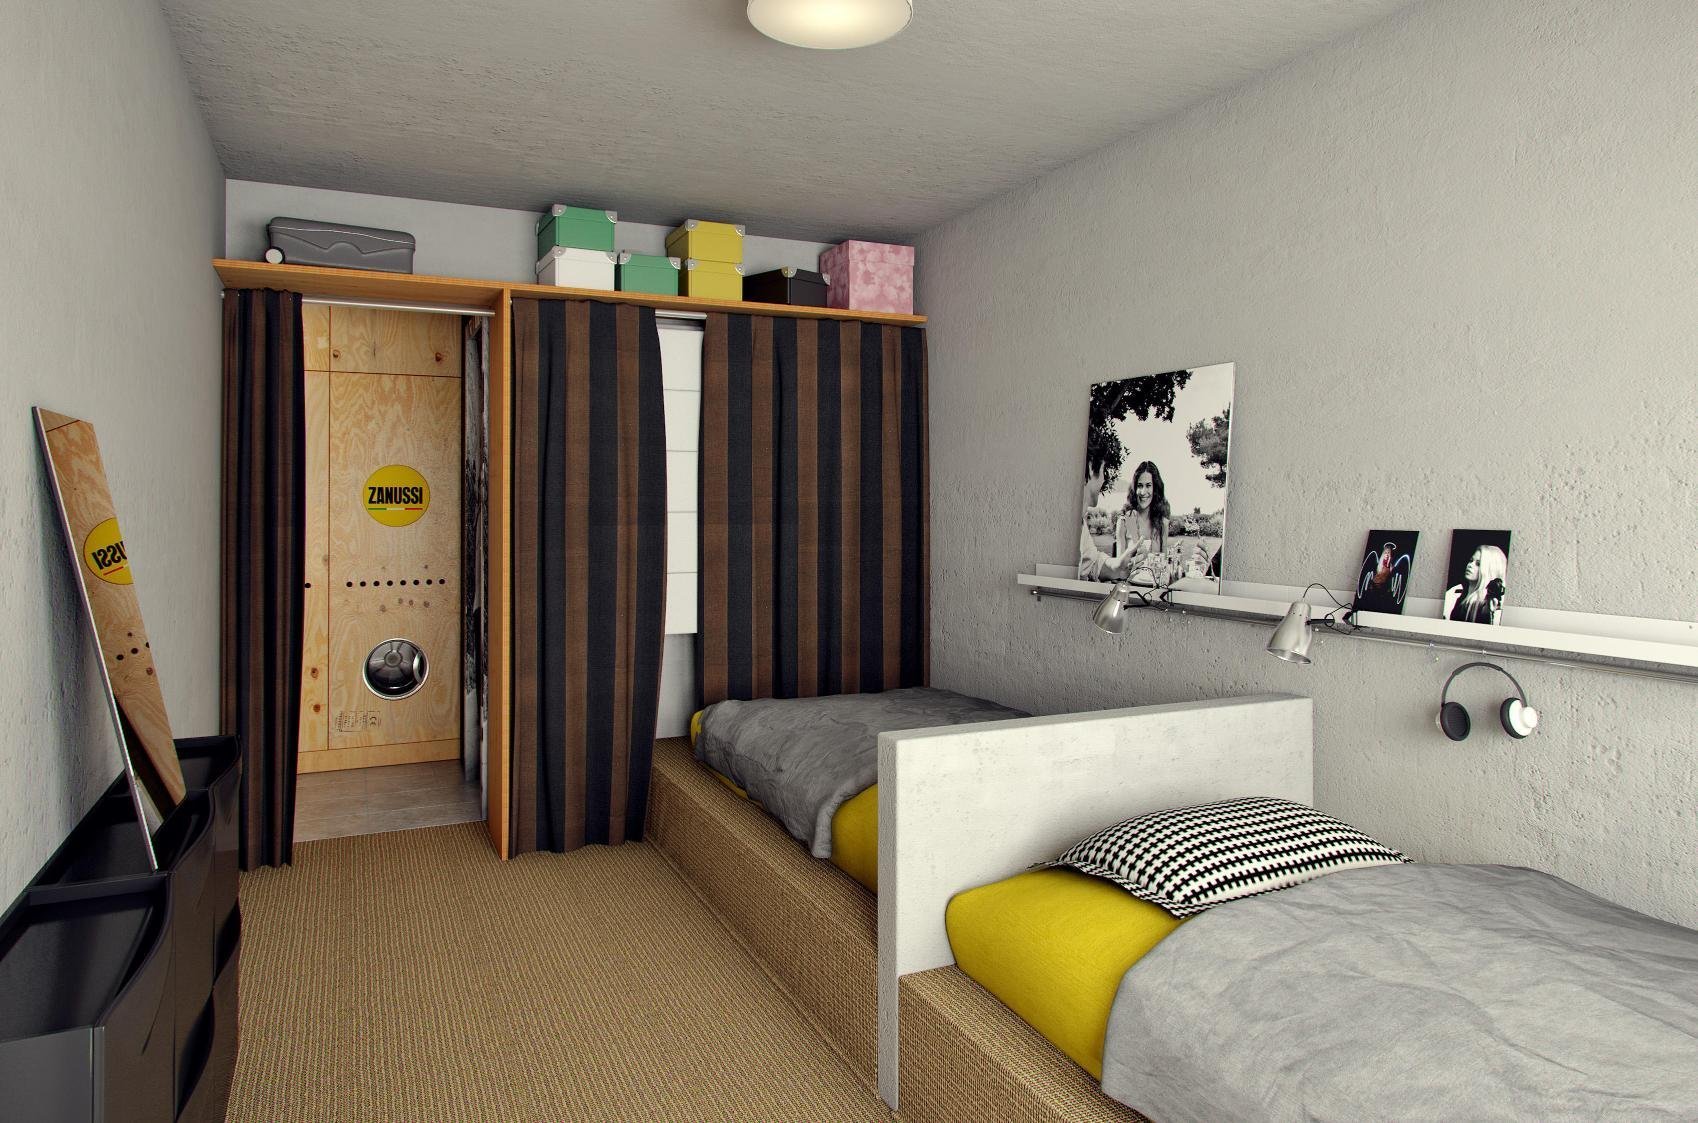 Оформляем интерьер комнаты в общежитии для студента или семьи